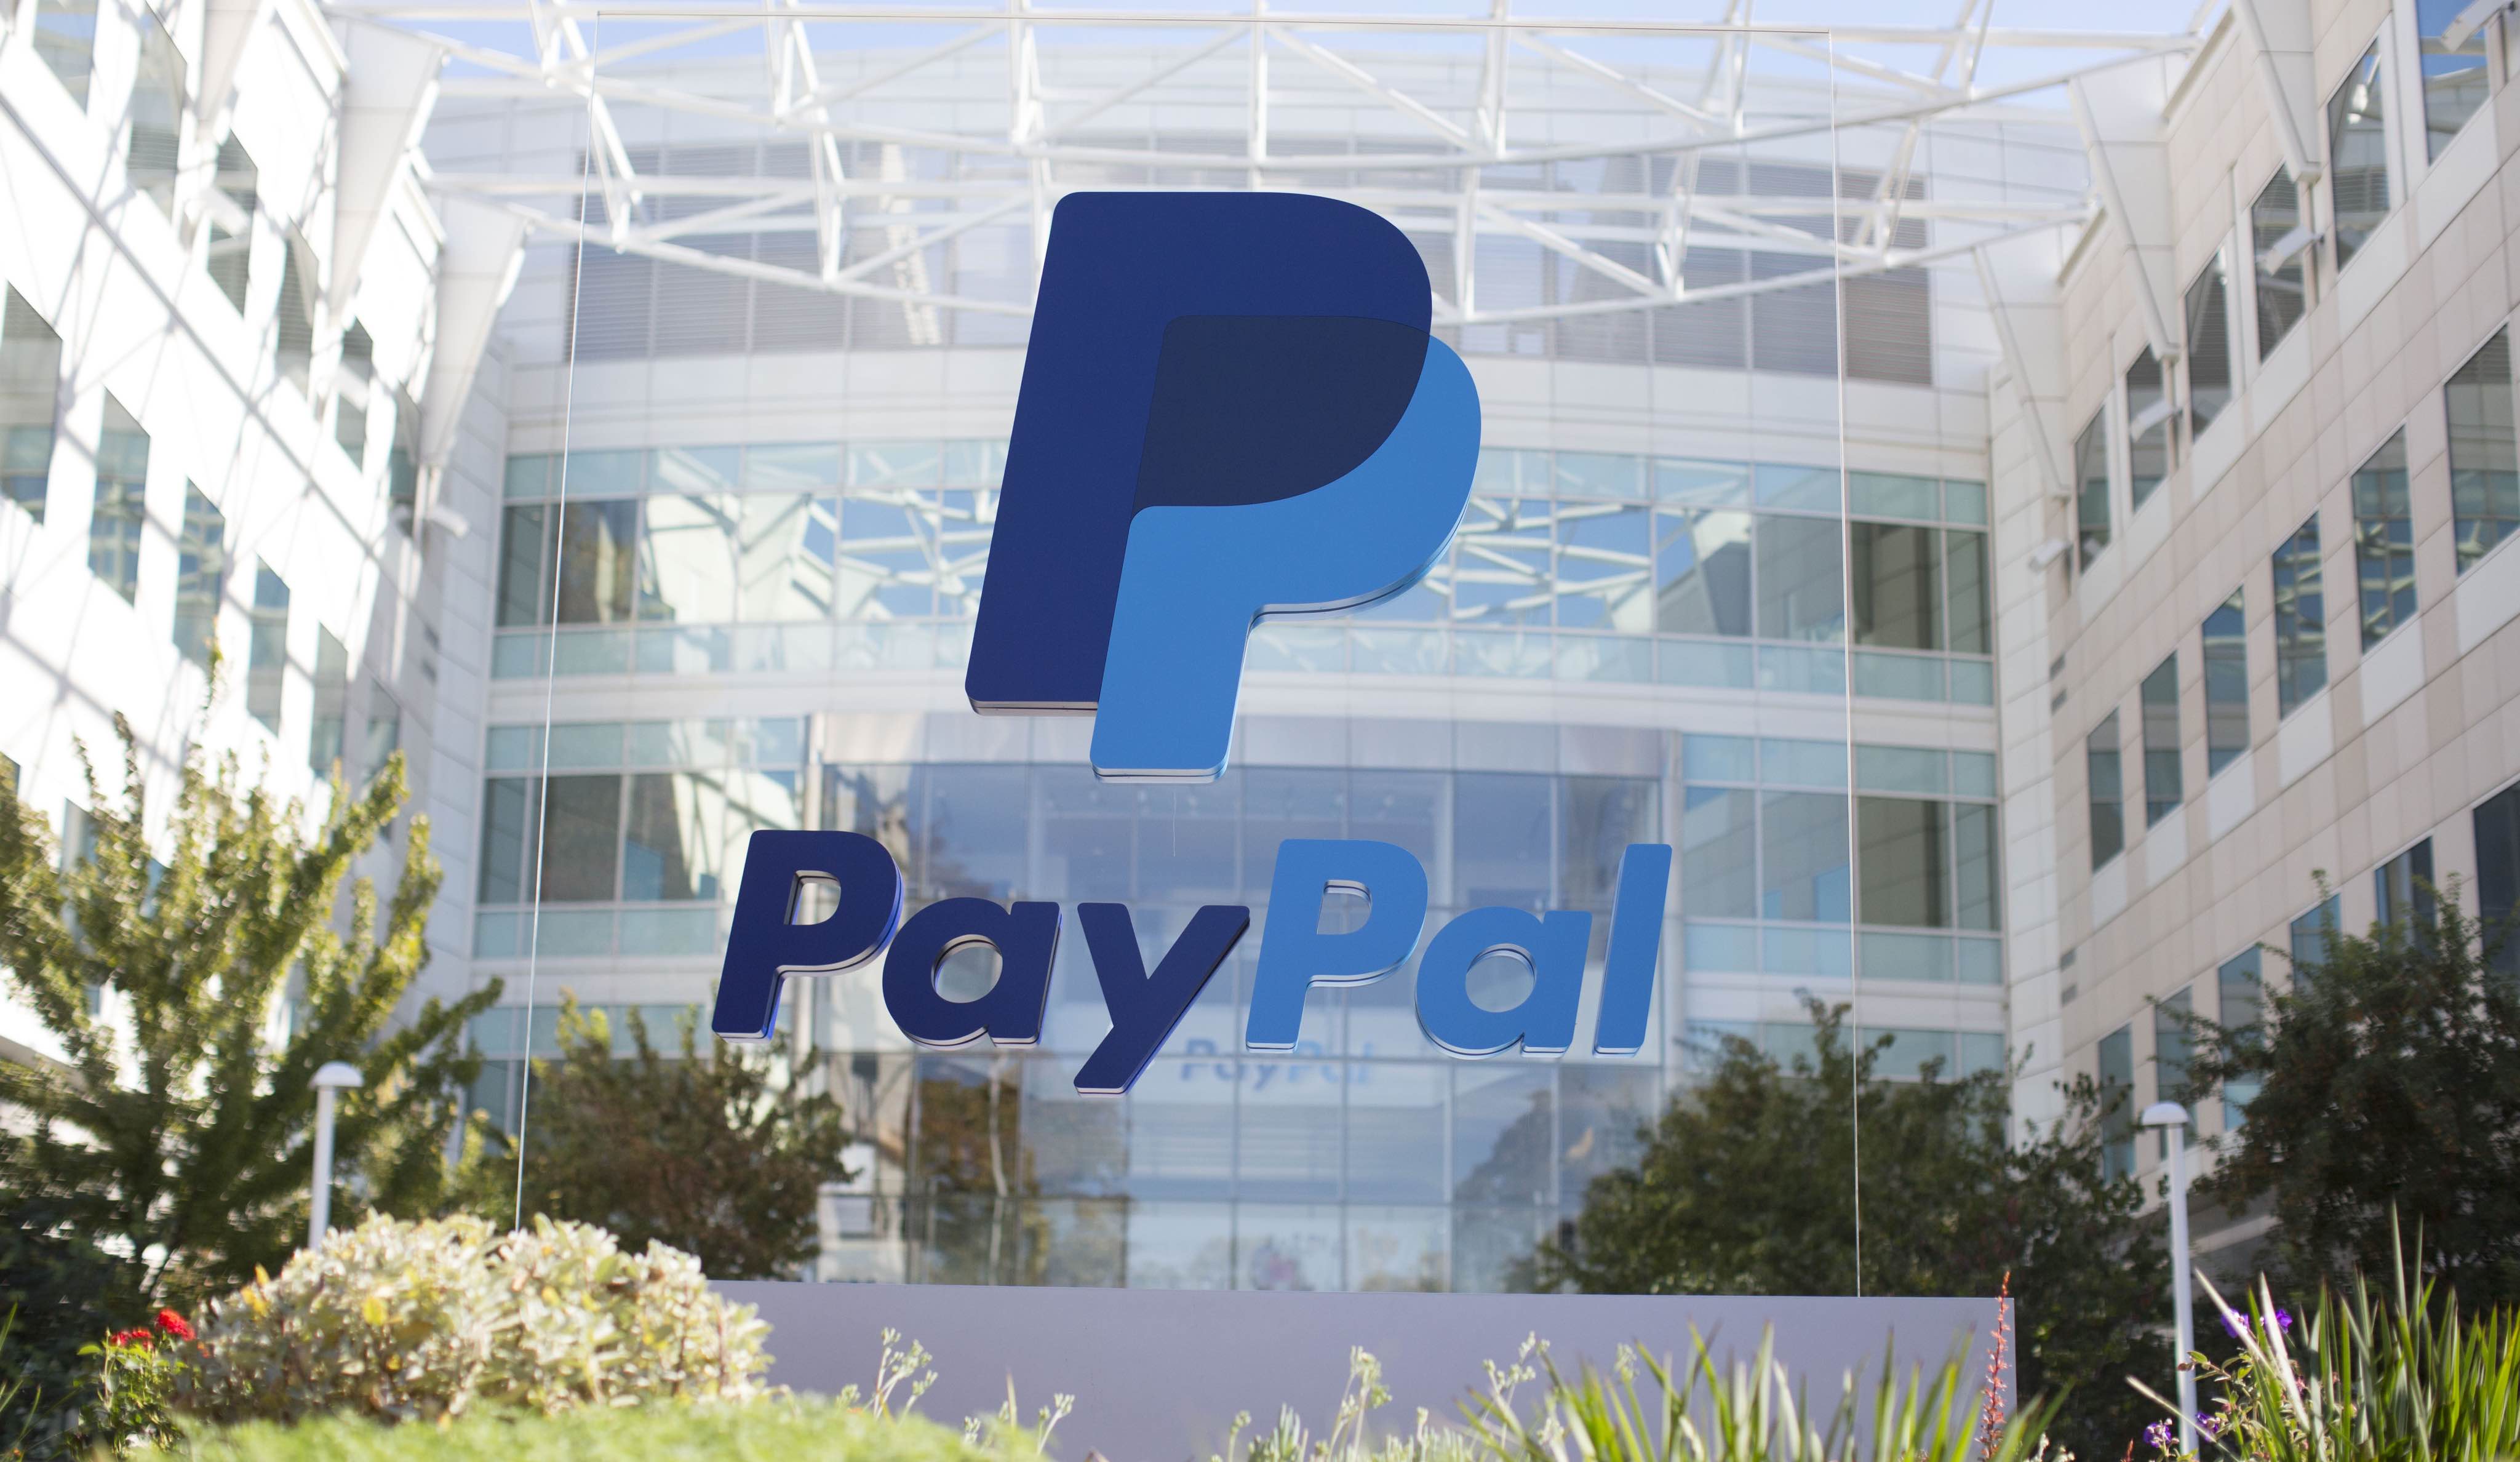 PayPal headquarters exterior 002